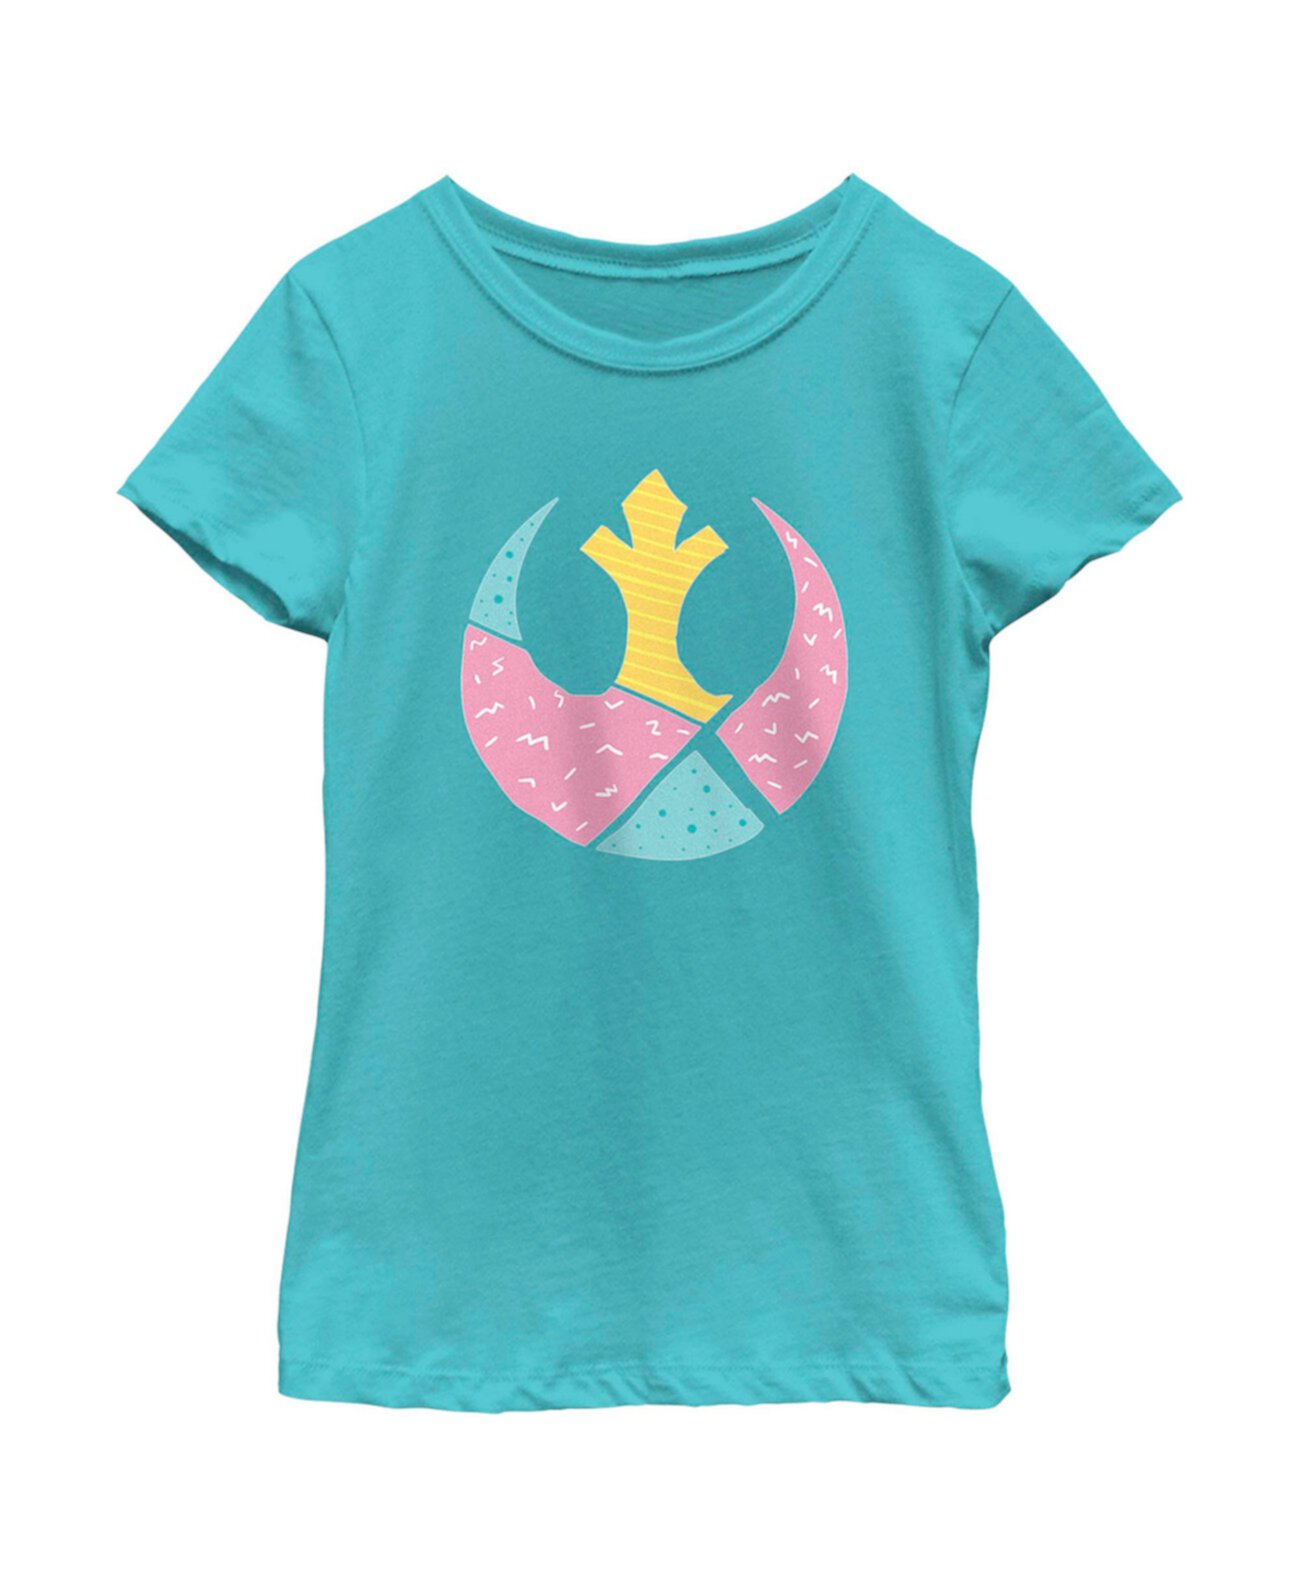 Детская футболка с логотипом Альянса повстанцев «Звездные войны» для девочек Disney